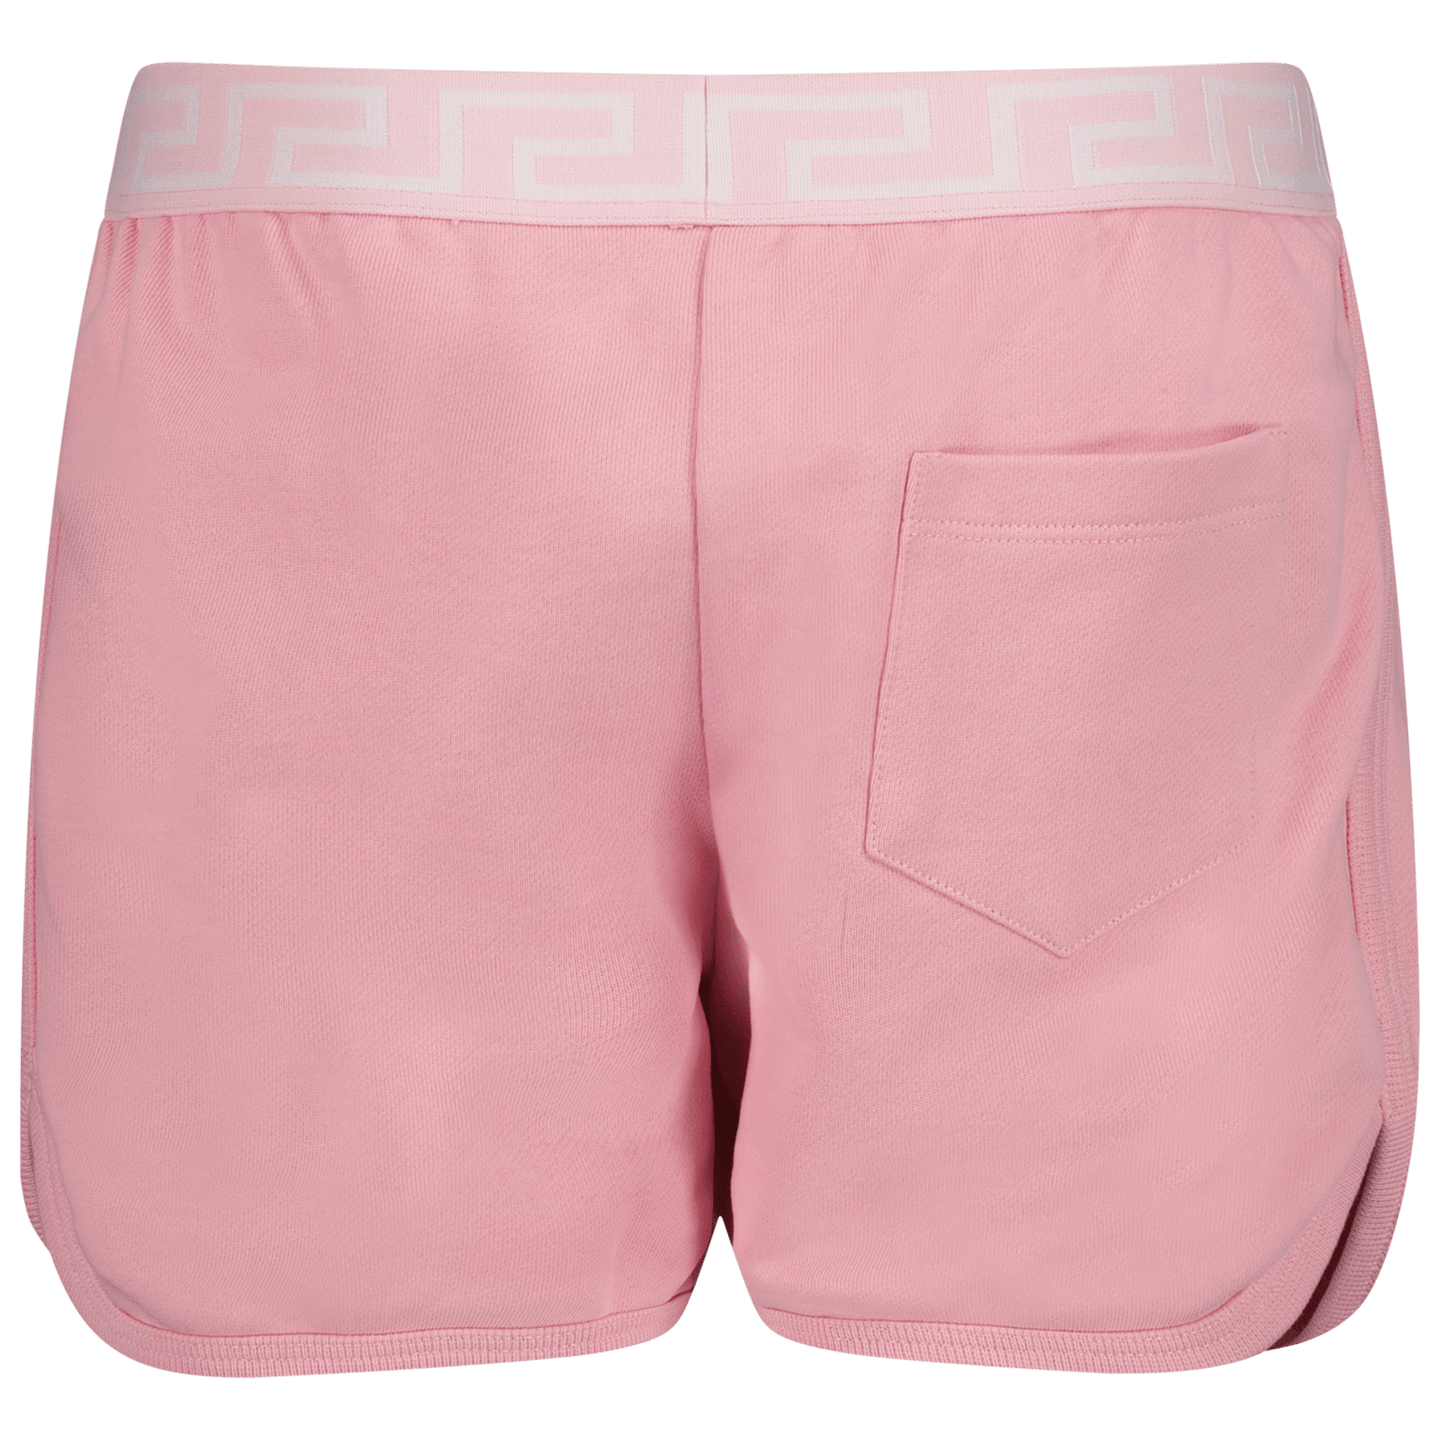 Versace Kinder Meisjes Shorts Licht Roze 4Y